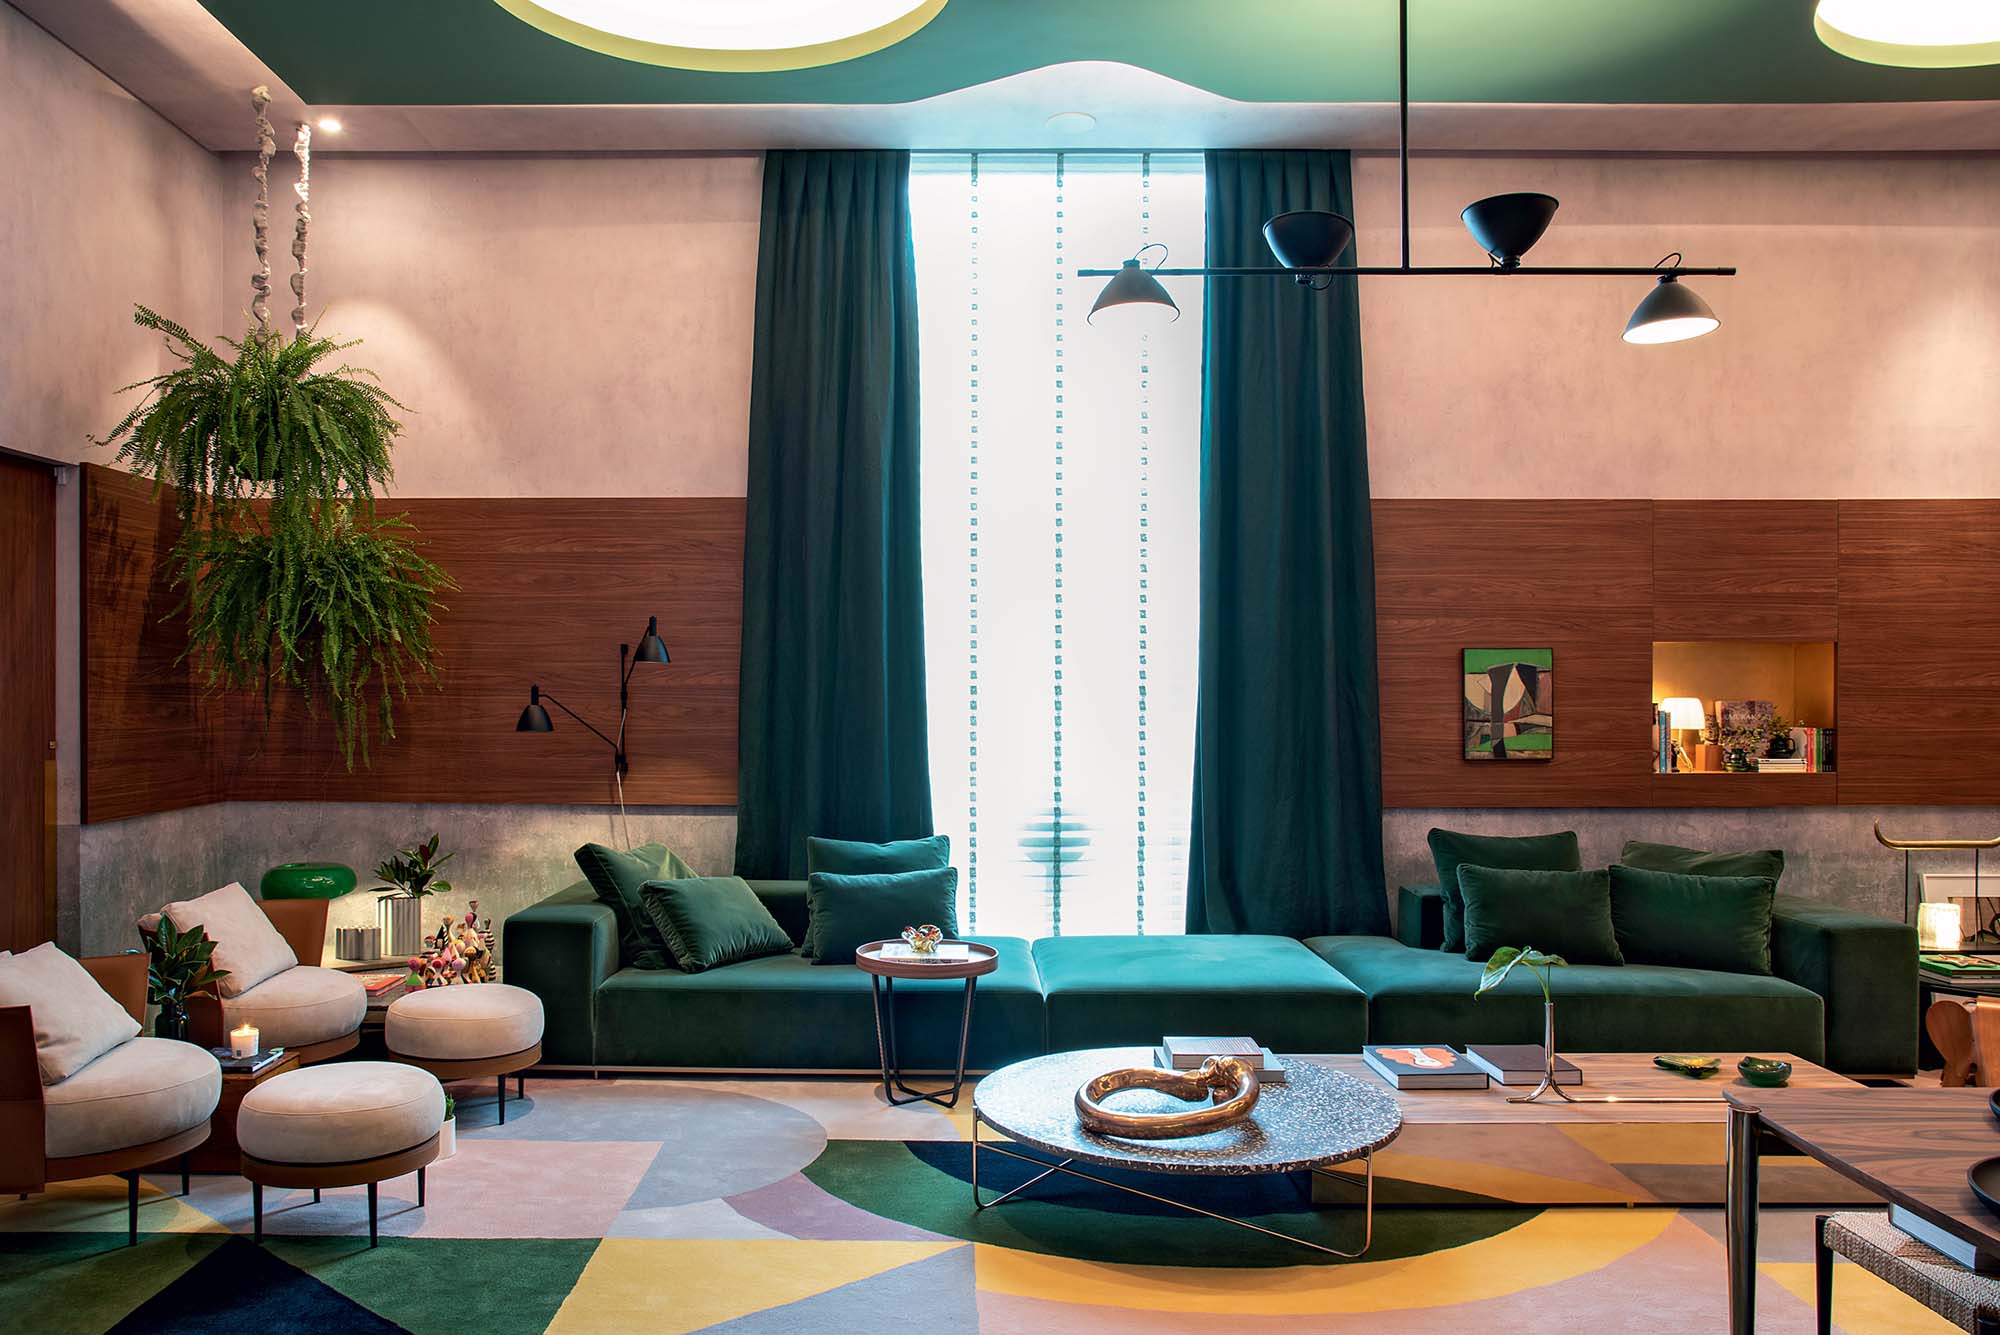 sofá verde naomi abe casacor sao paulo 2019 living do colecionador projeto